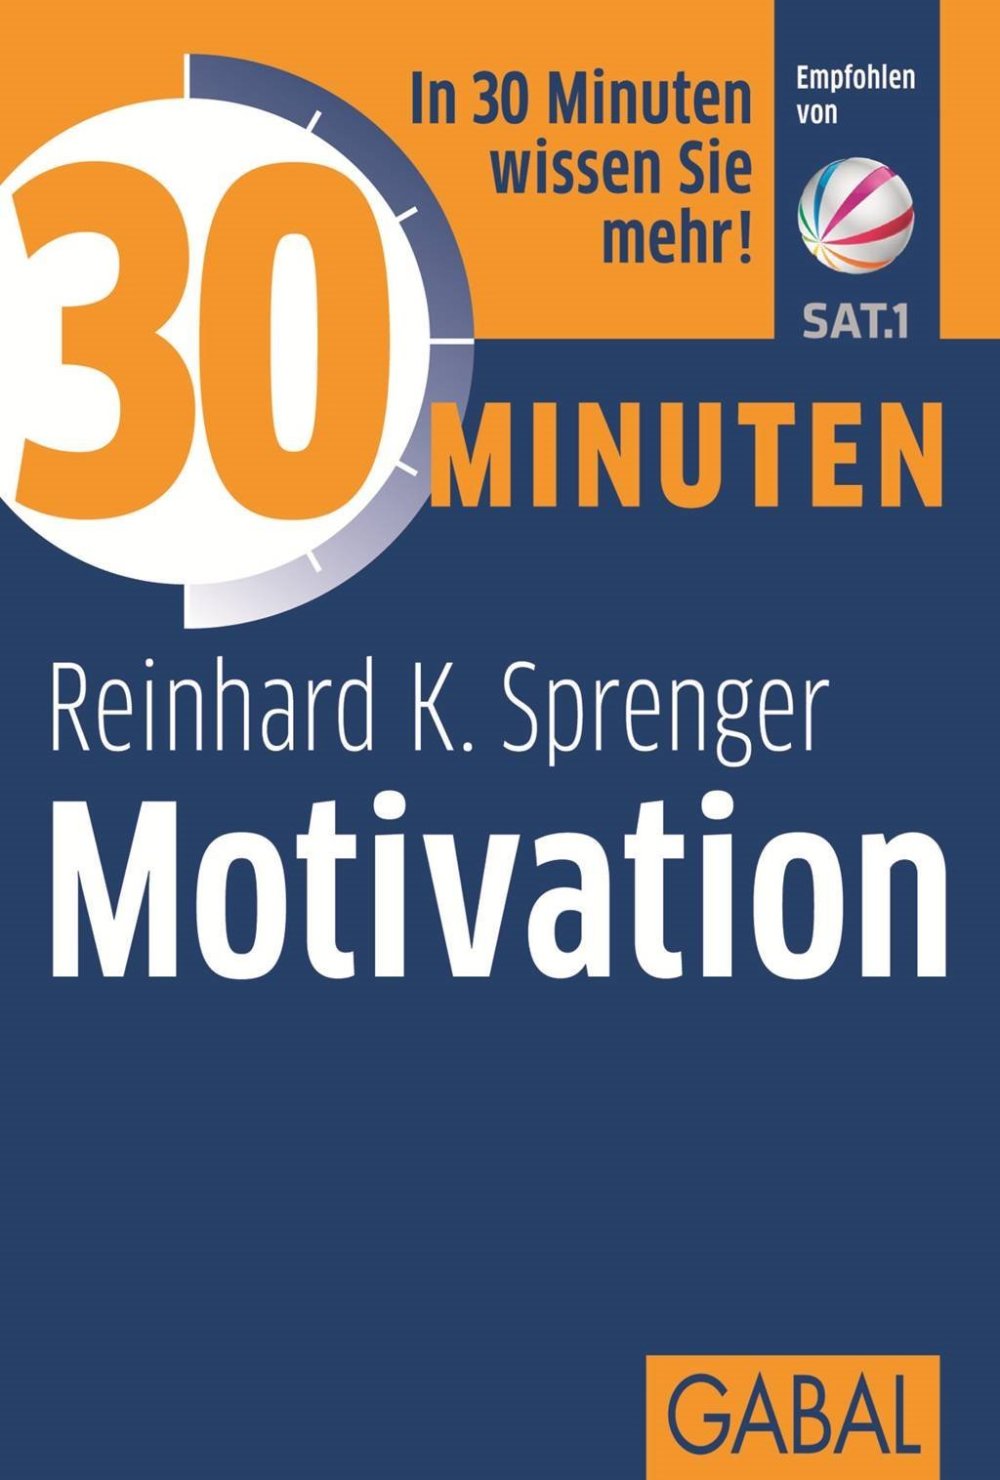 "30 Minuten Motivation" - ein kurz-und-knappes Werk über Motive, Motivierung, Motivieren - von Reinhard K. Sprenger, einem der bekanntesten Motivationstrainer in Deutschland (Amazon, 386936257X)